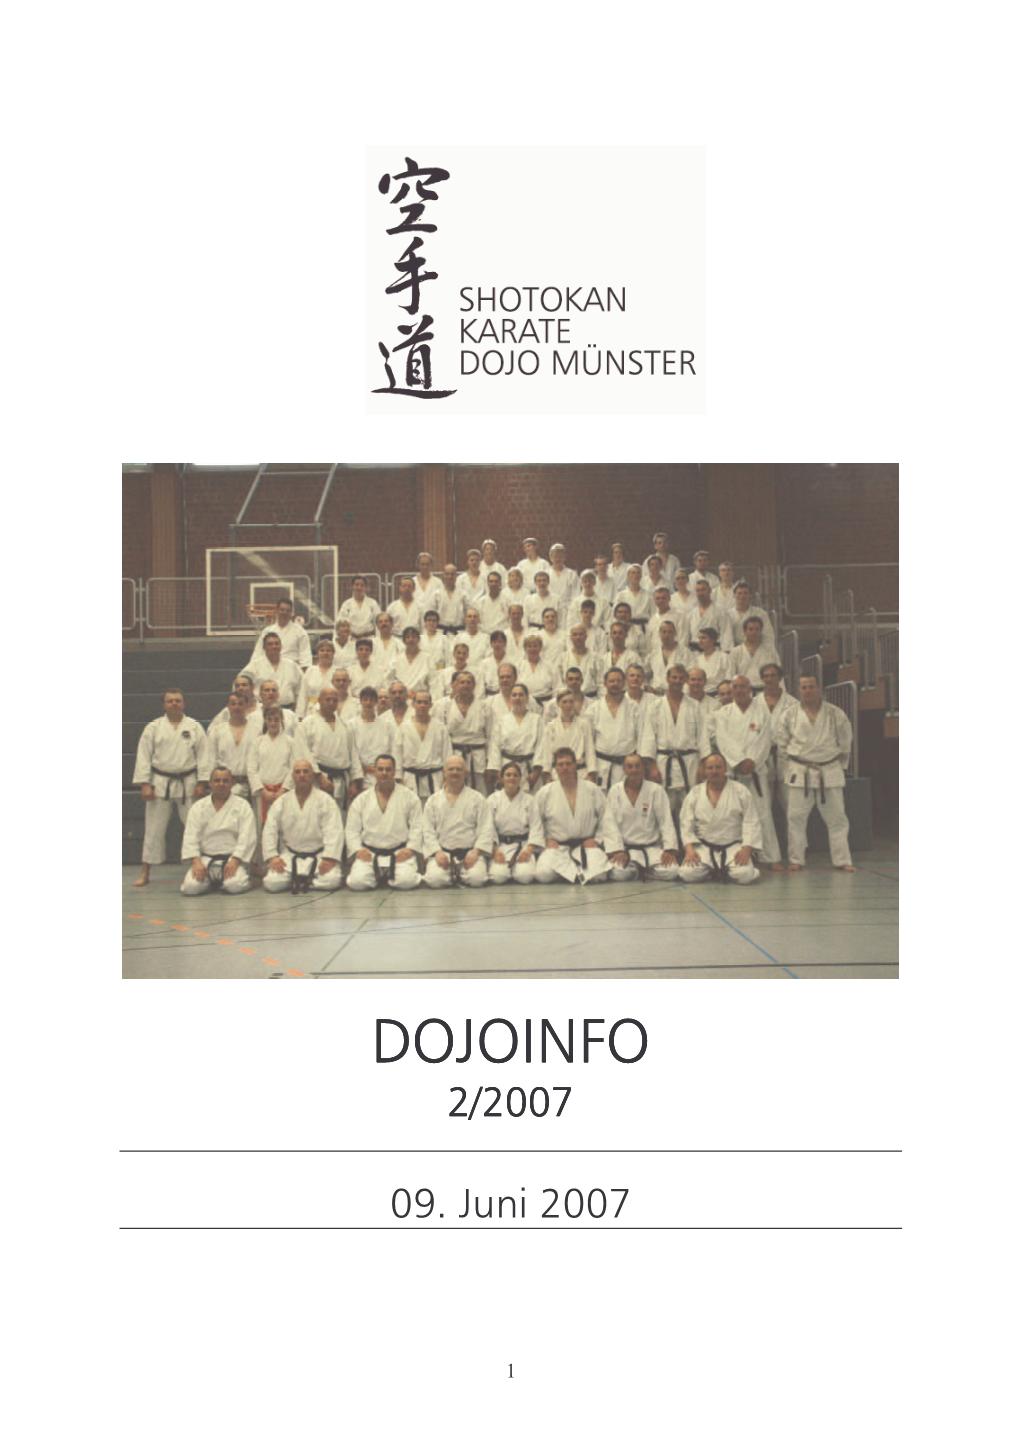 Dojoinfo 222/20072/2007